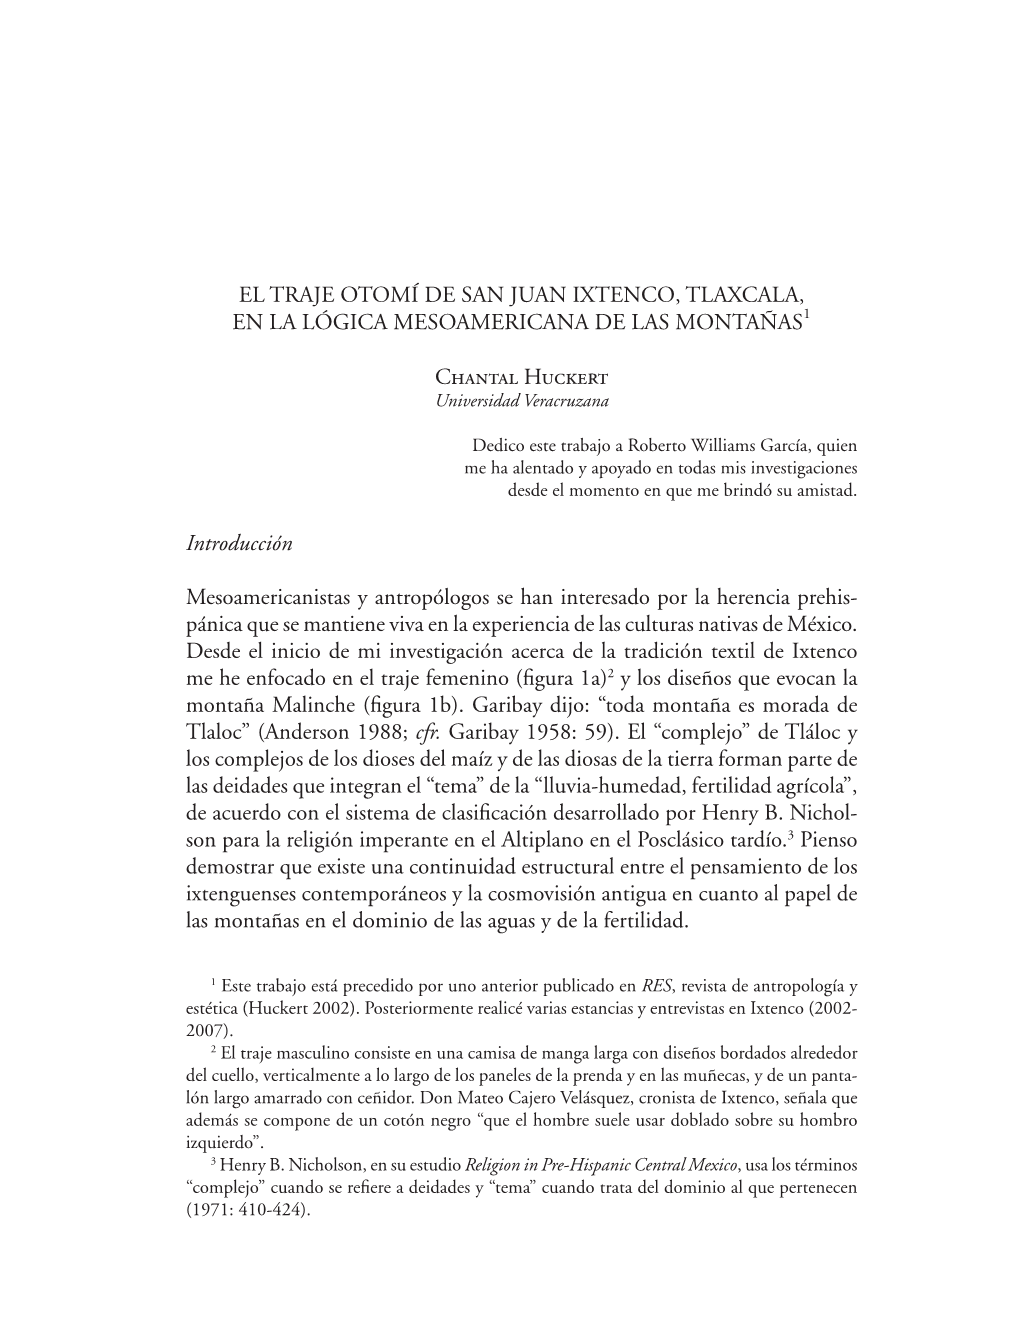 El Traje Otomí De San Juan Ixtenco, Tlaxcala, En La Lógica Mesoamericana De Las Montañas1